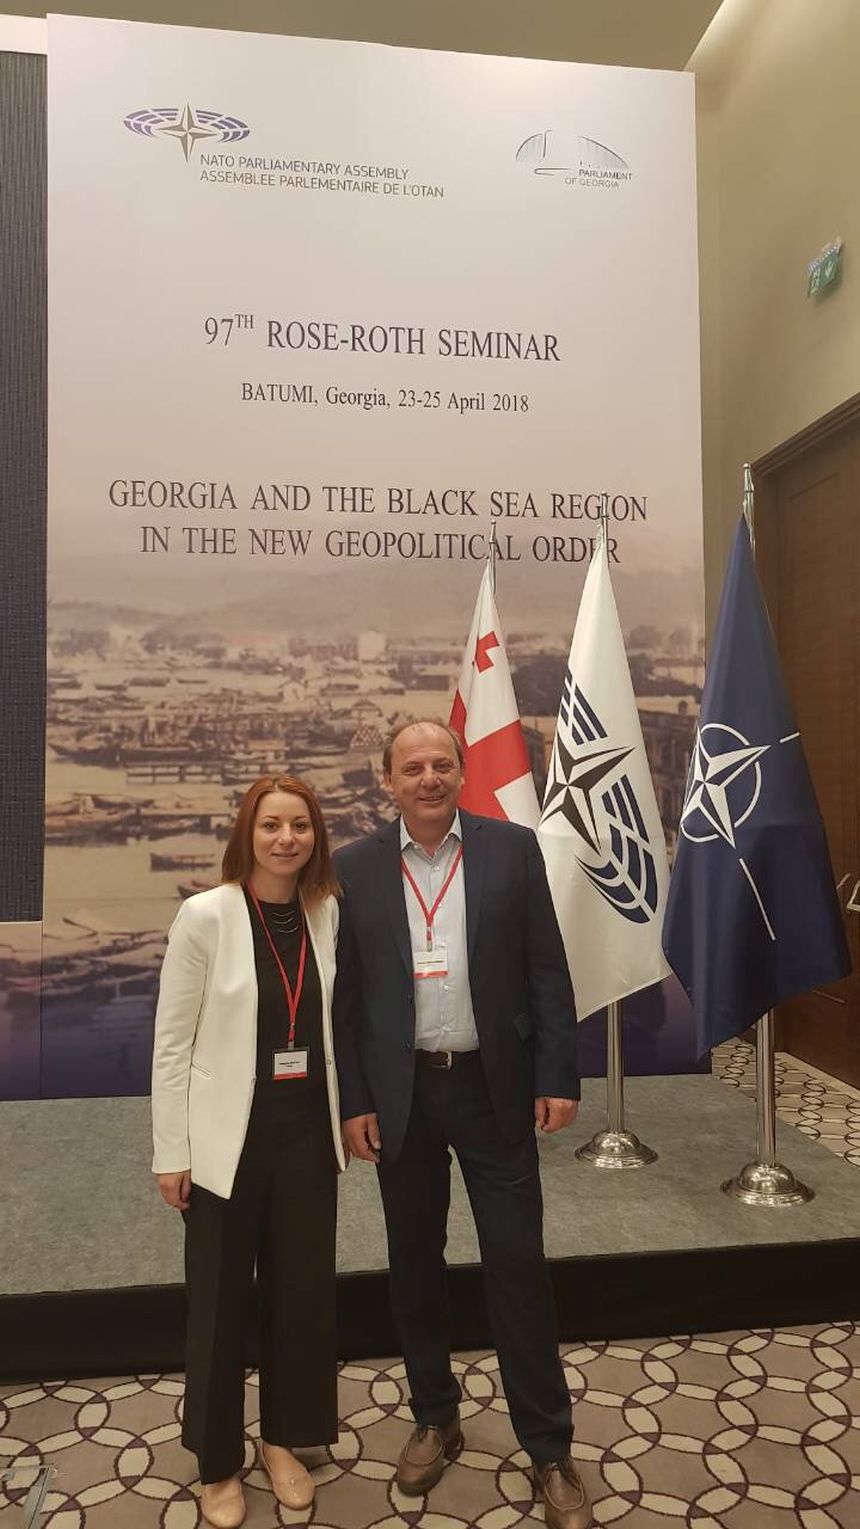 Συμμετοχή των βουλευτών του ΣΥΡΙΖΑ Χρήστου Καραγιαννίδη και Παναγιώτας Δριτσέλη σε διάσκεψη της Κοινοβουλευτικής Συνέλευσης του ΝΑΤΟ στη Γεωργία